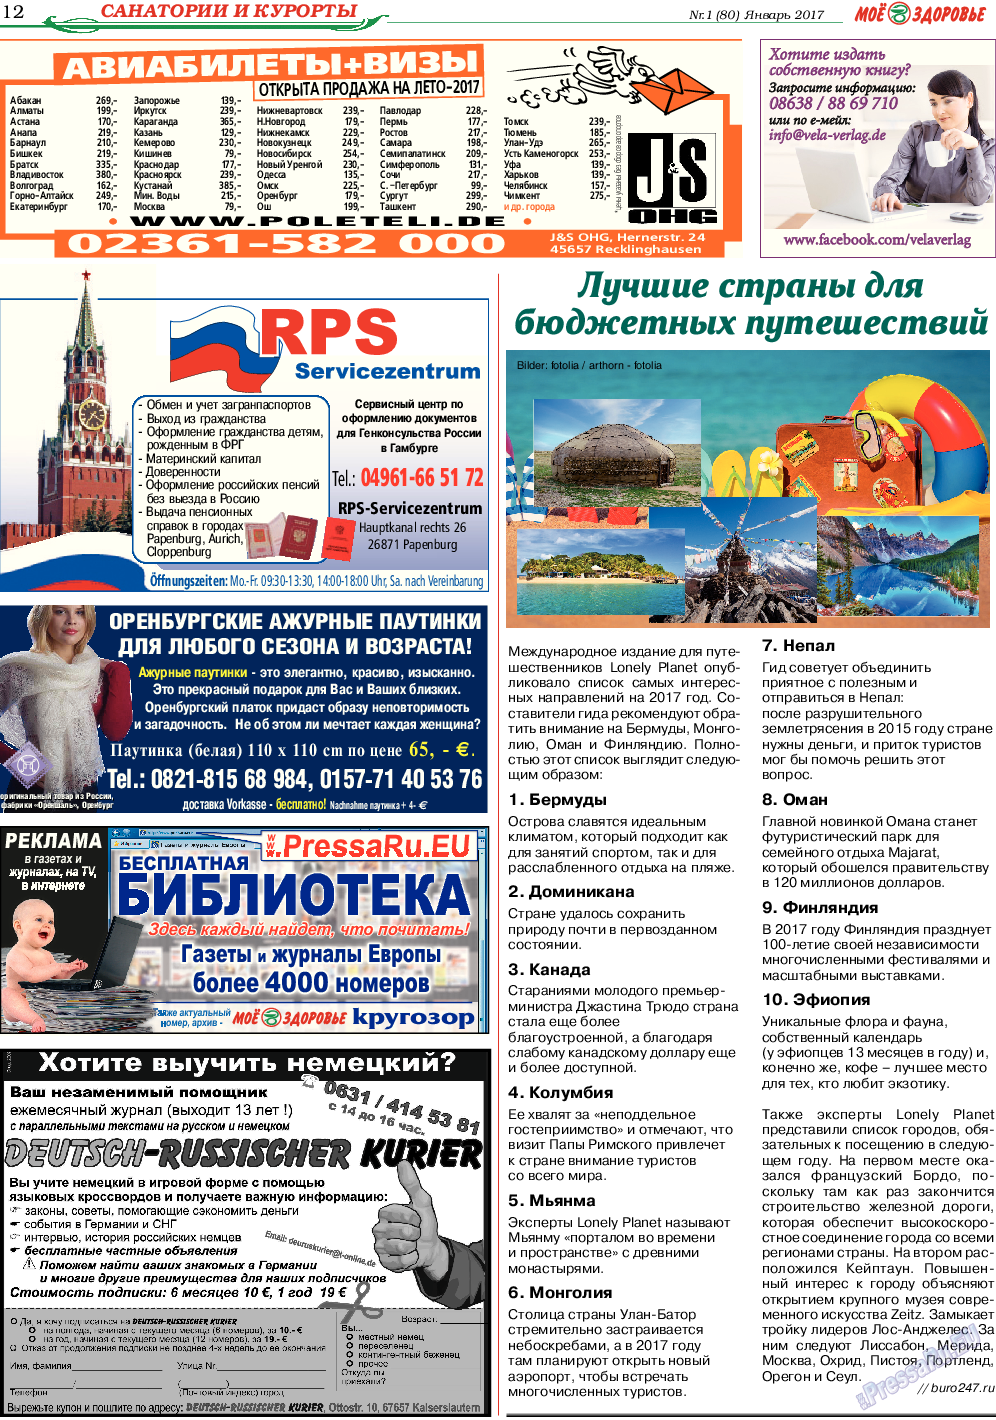 Кругозор (газета). 2017 год, номер 1, стр. 12